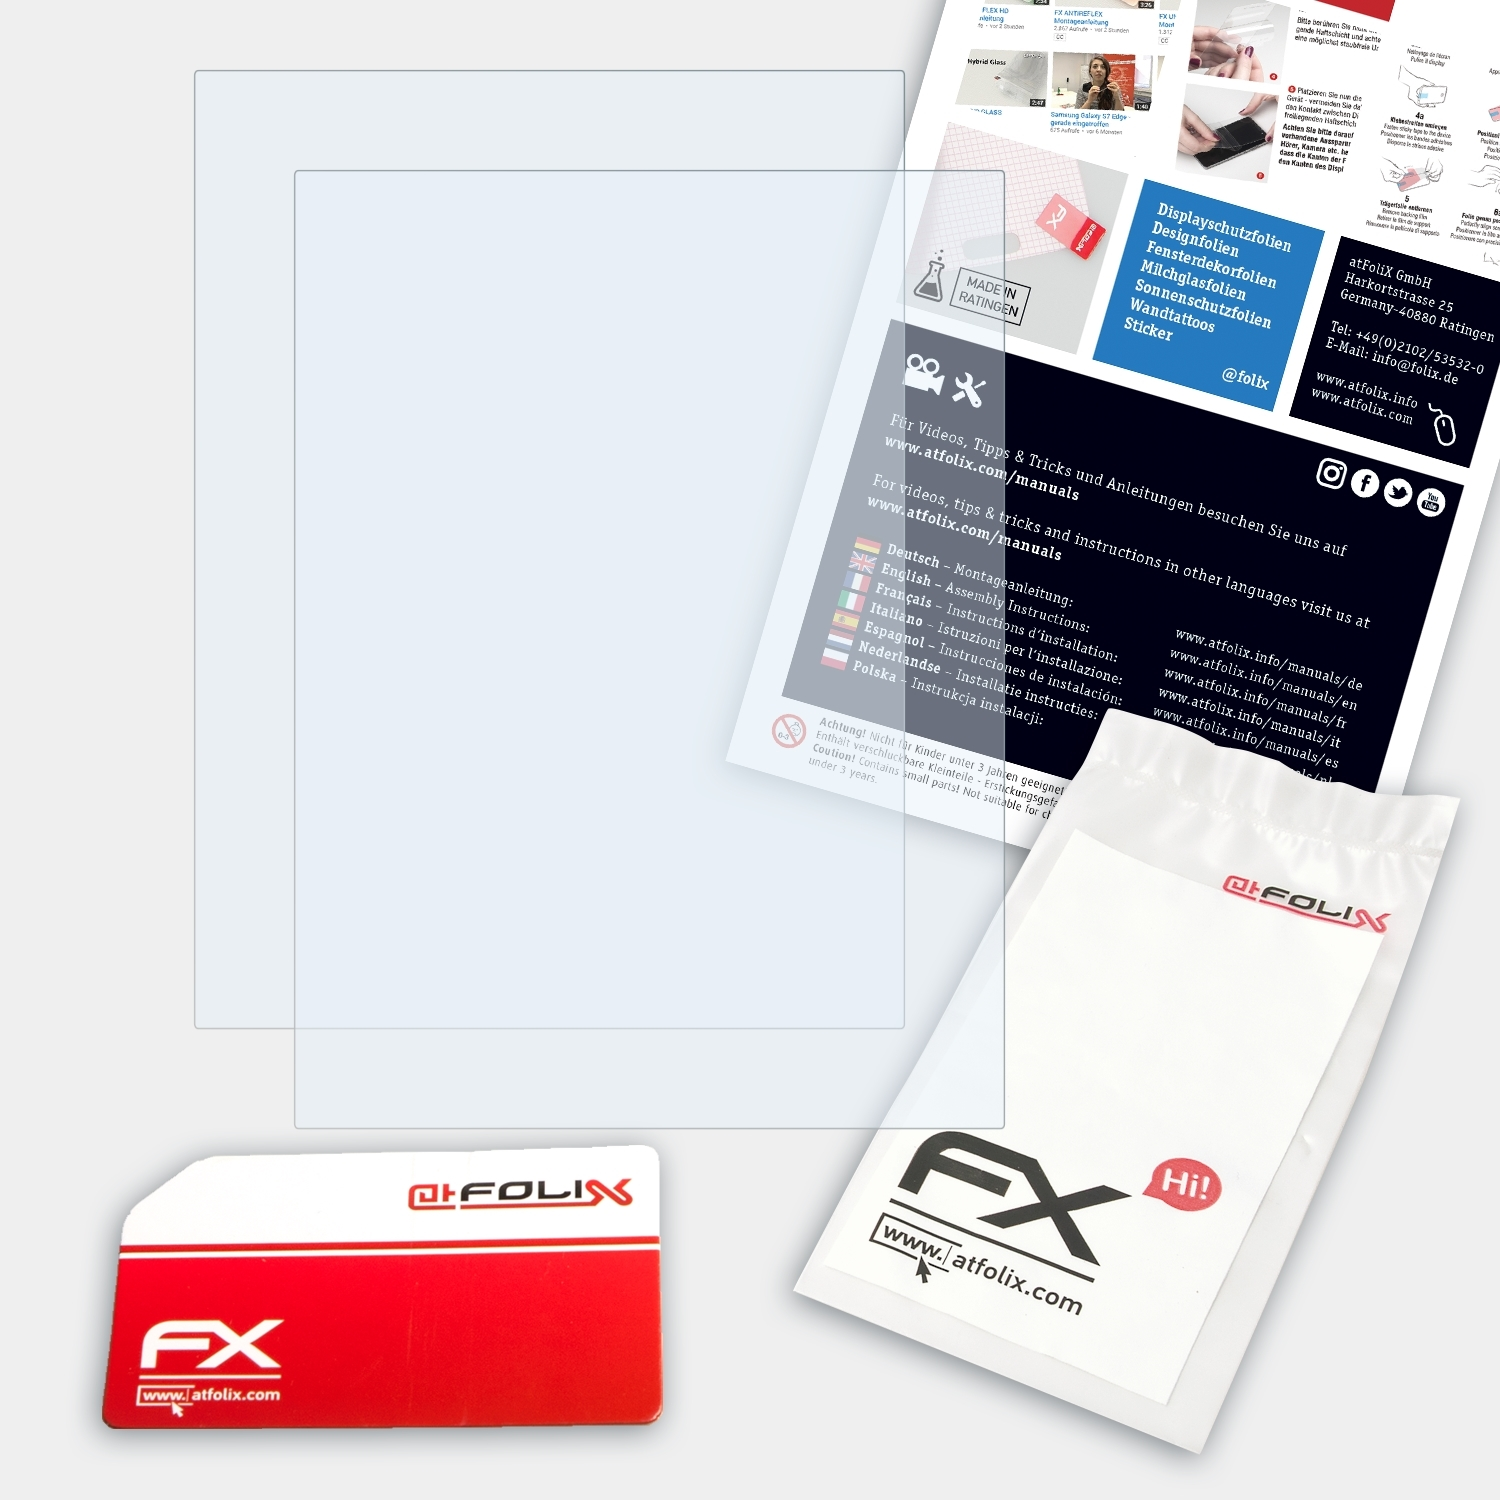 ATFOLIX 2x Displayschutz(für Reader PRS-600 FX-Clear Sony Edition) Touch